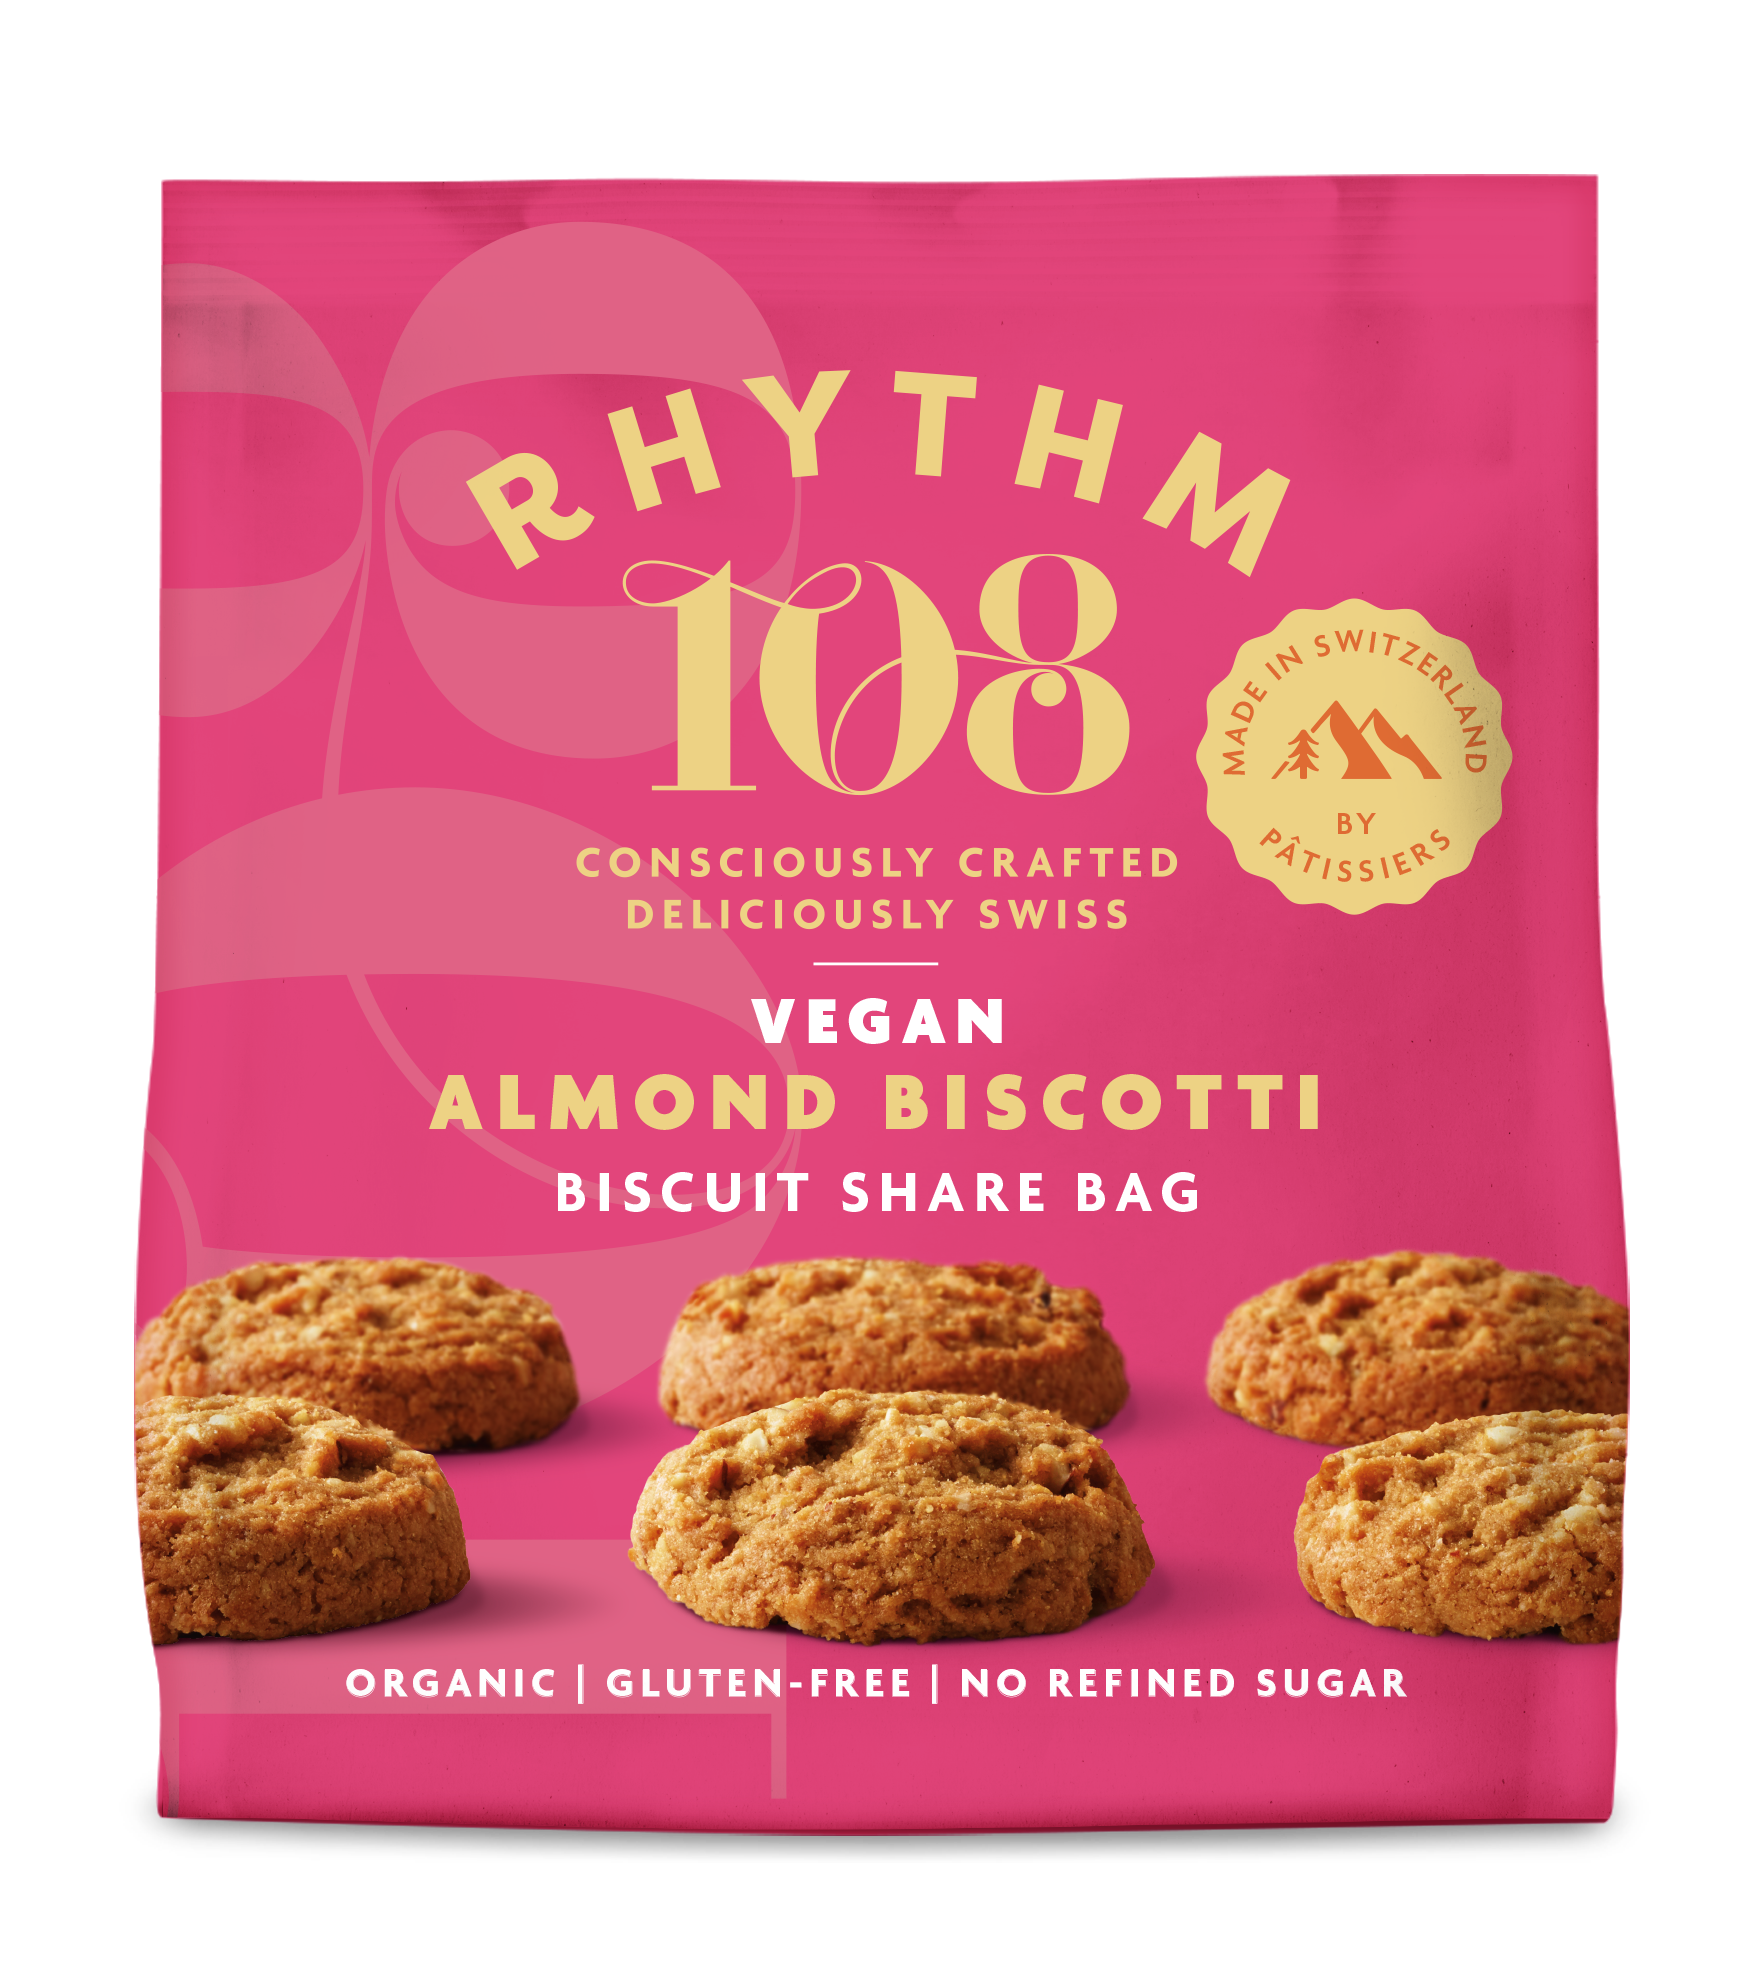 Rhythm108 Biscuit Bag Almond Biscotti 135g Bio